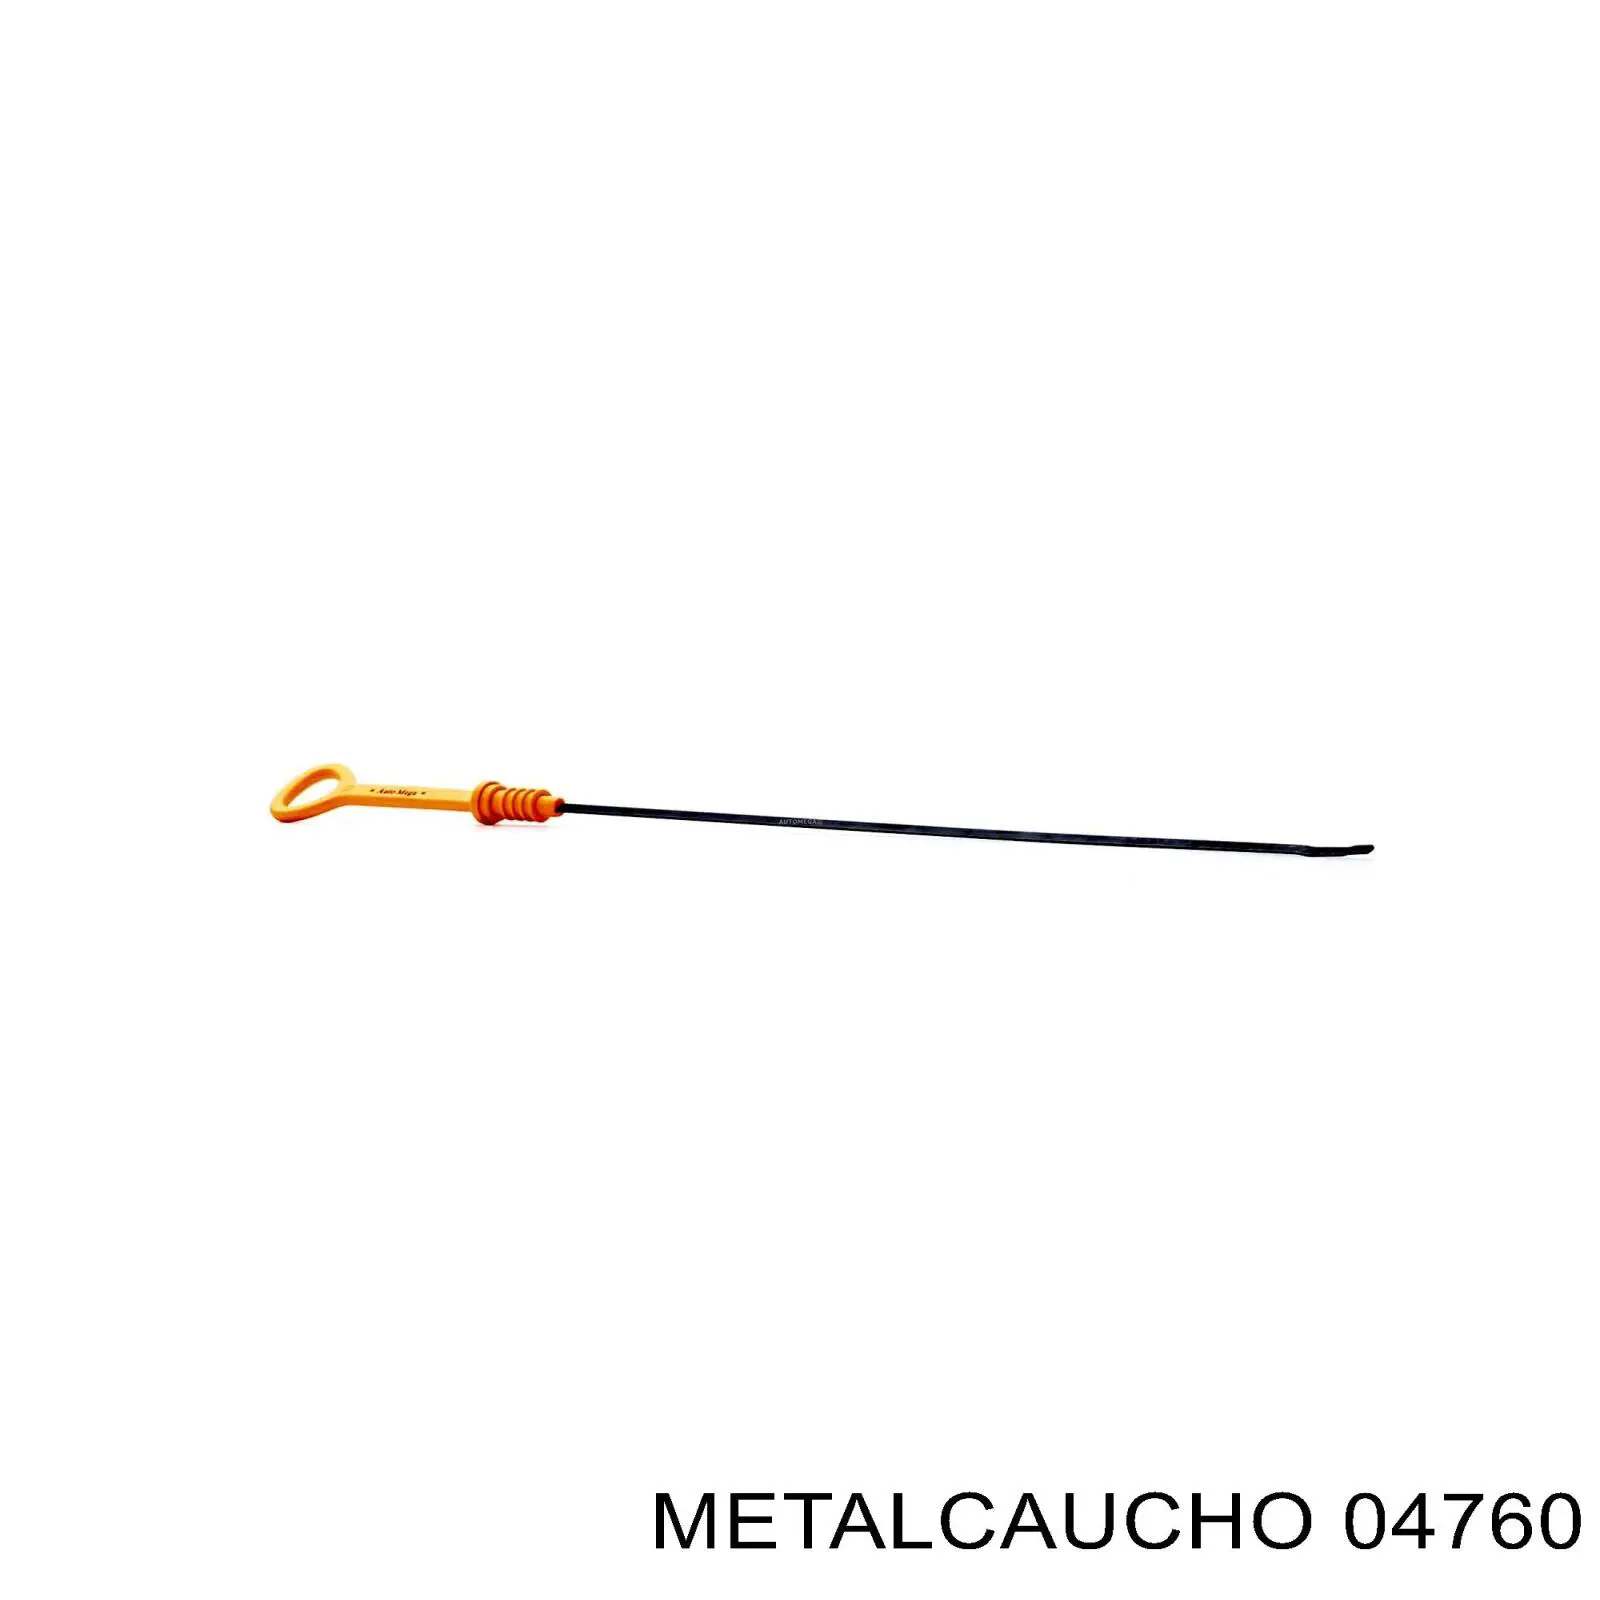 04760 Metalcaucho varilla de nivel de aceite